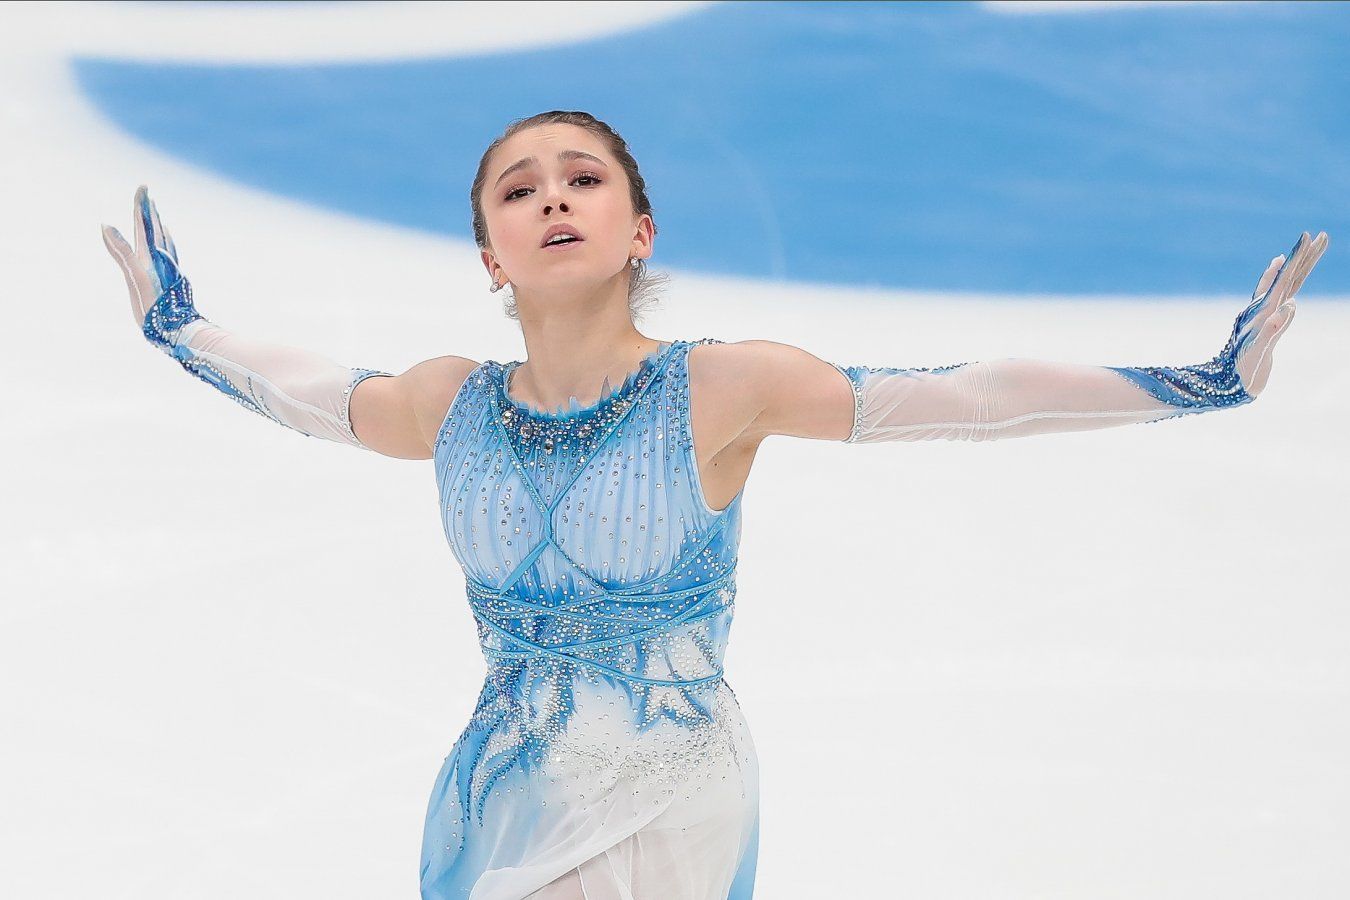 Apuestas y pronosticos sobre los Juegos Olimpicos: Otro triunfo de Rusia en patinaje artistico│4 de febrero de 2022  